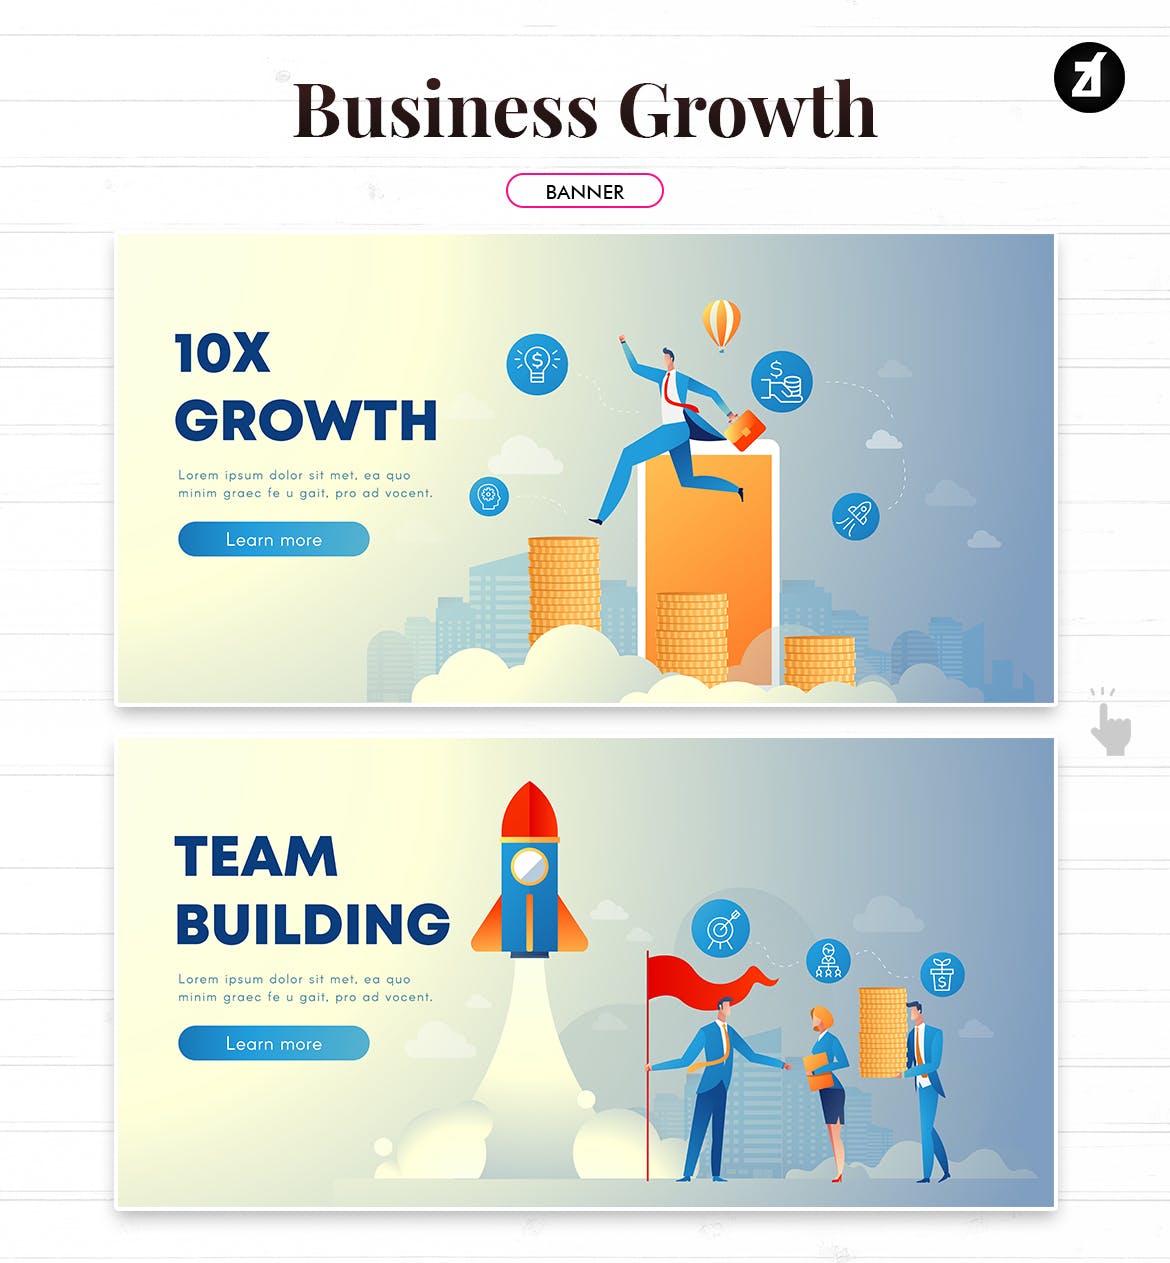 业务增长企业主题矢量插画素材 Business growth illustration with text layout插图3